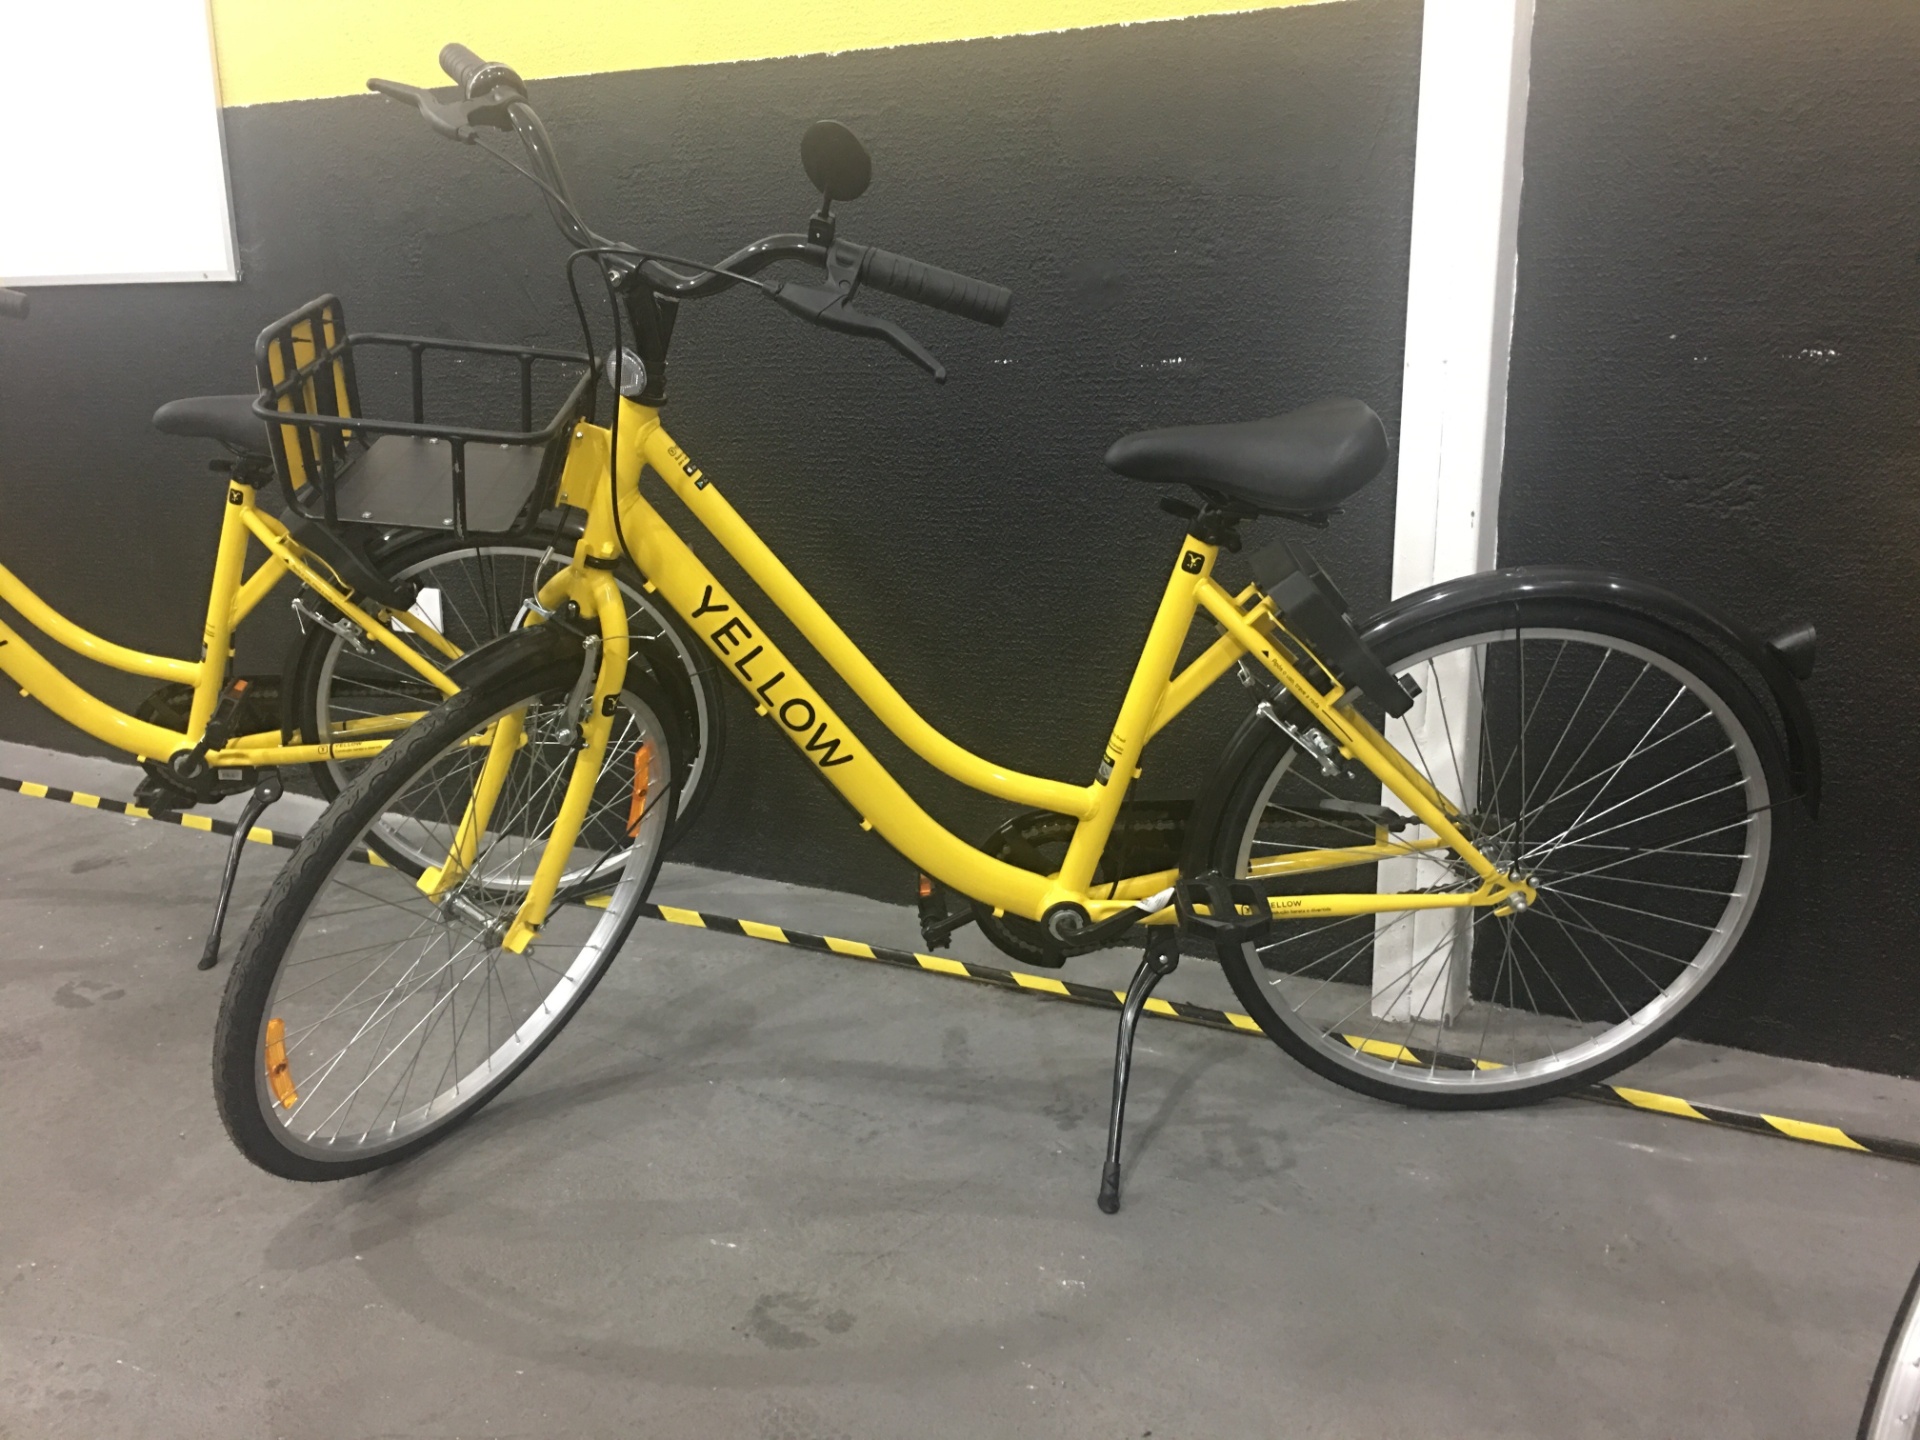 yellow bike sao paulo